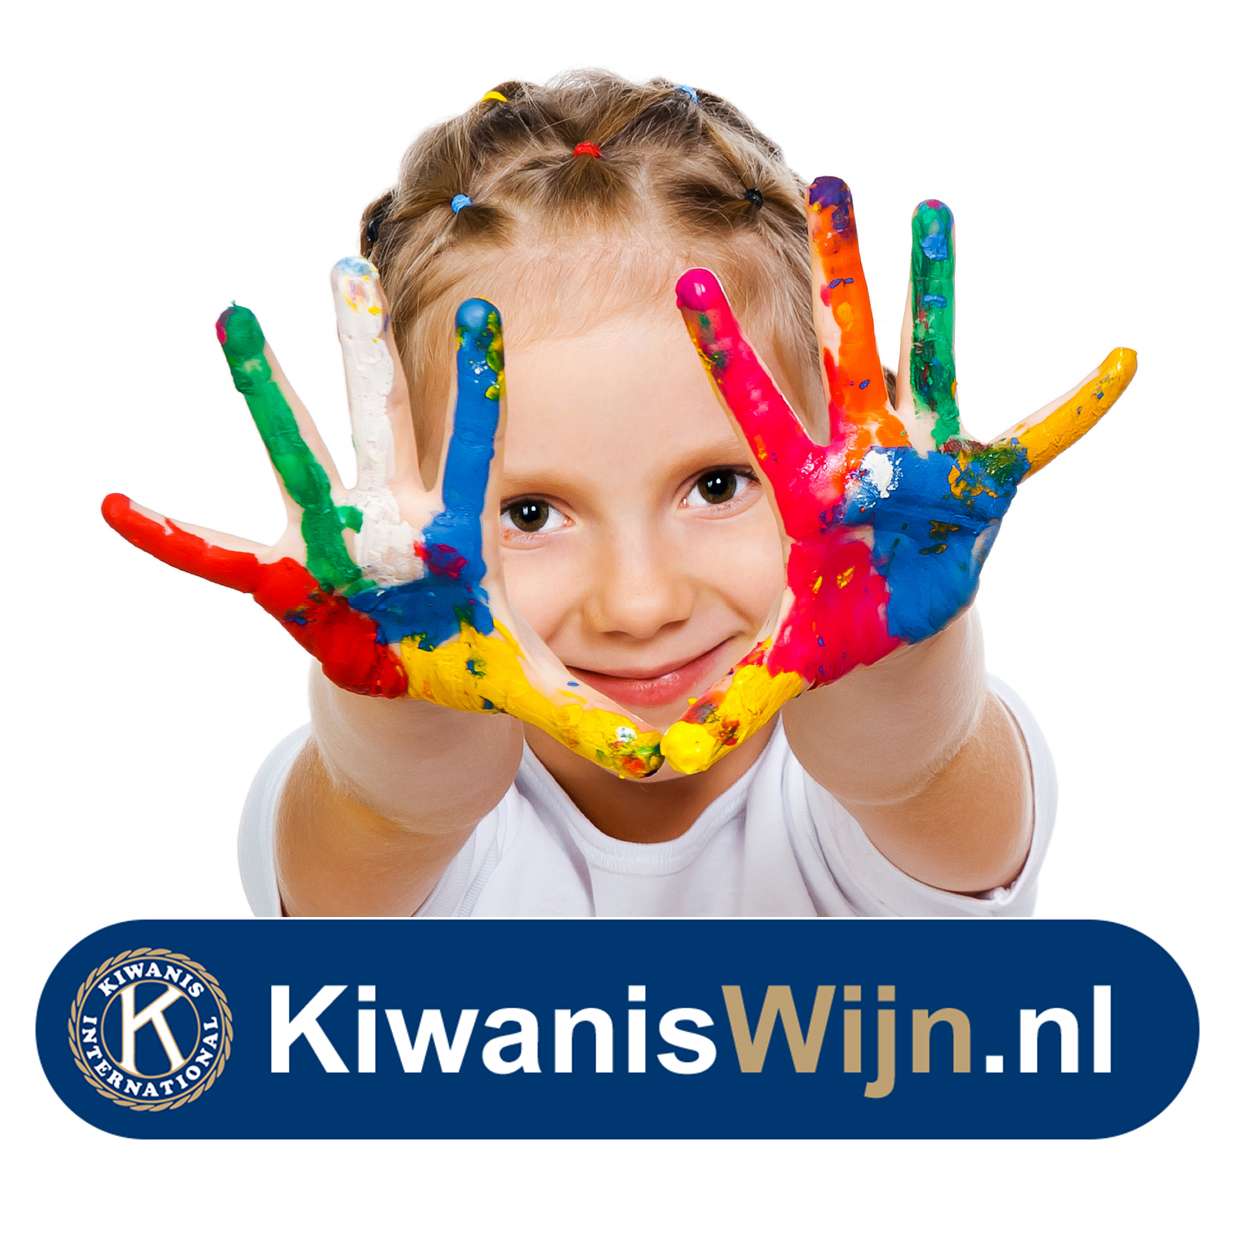 /imagecache/lg/uploads/2020/05/kiwaniswijn-logo-en-handen-v01.jpg